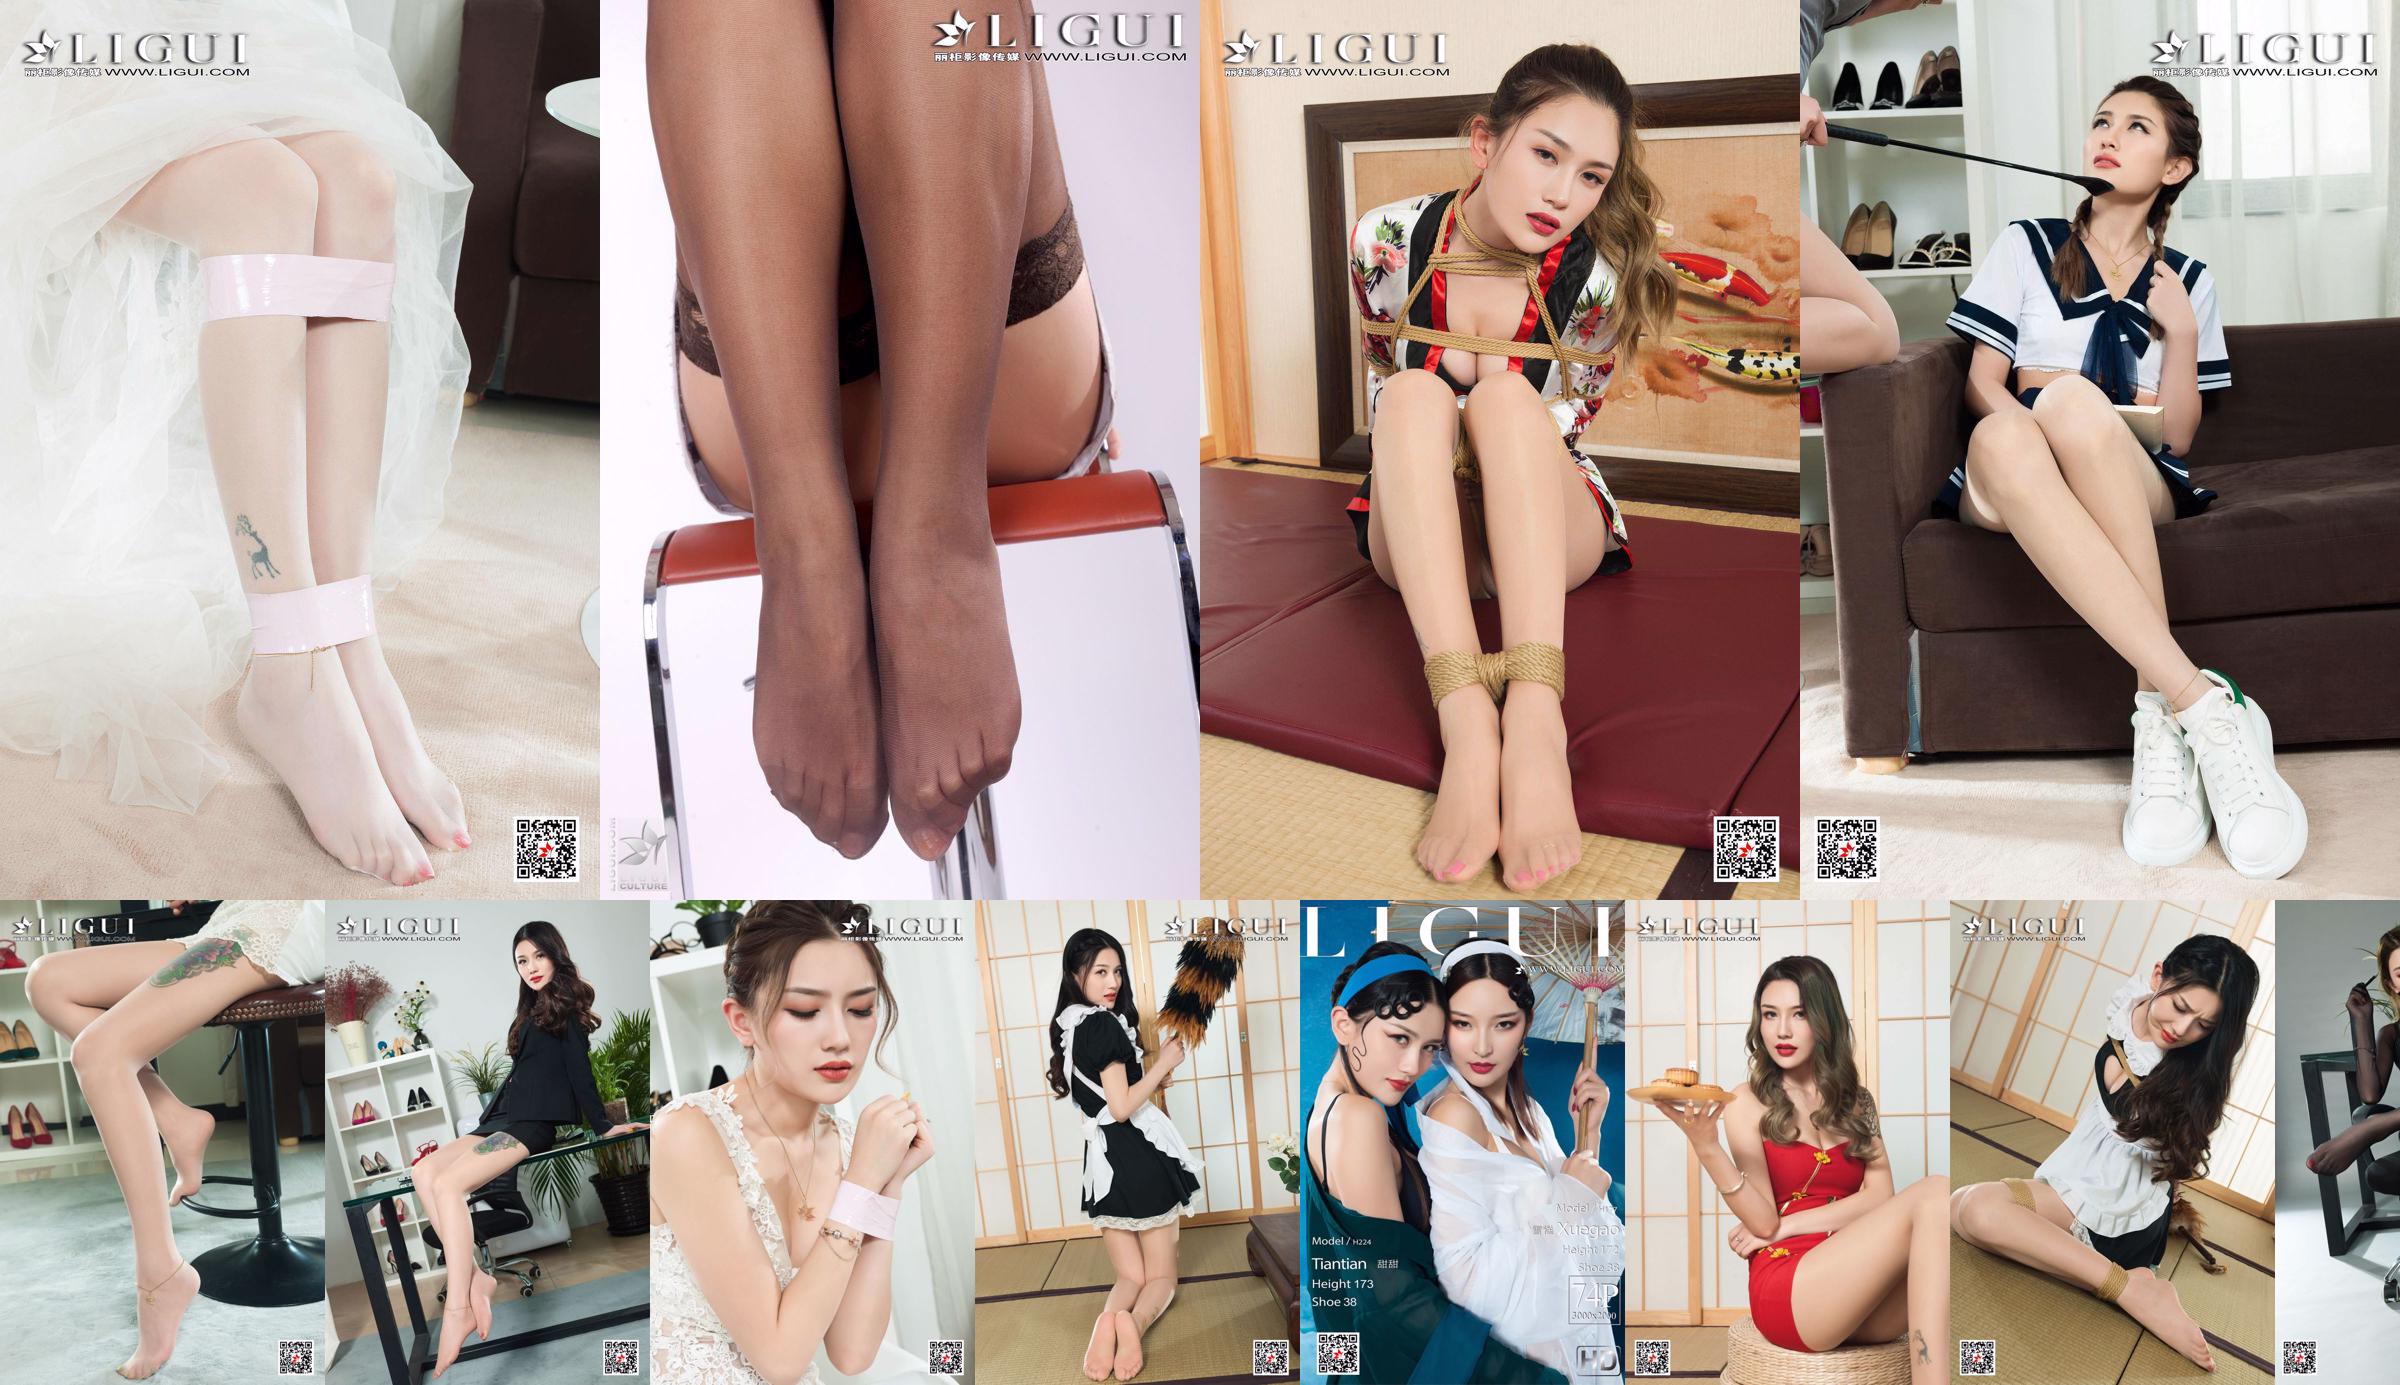 Người mẫu chân Ngọt ngào "Chân lụa nghệ thuật người hầu gái" [Ligui Meishu Ligui] No.4d6abf Trang 4